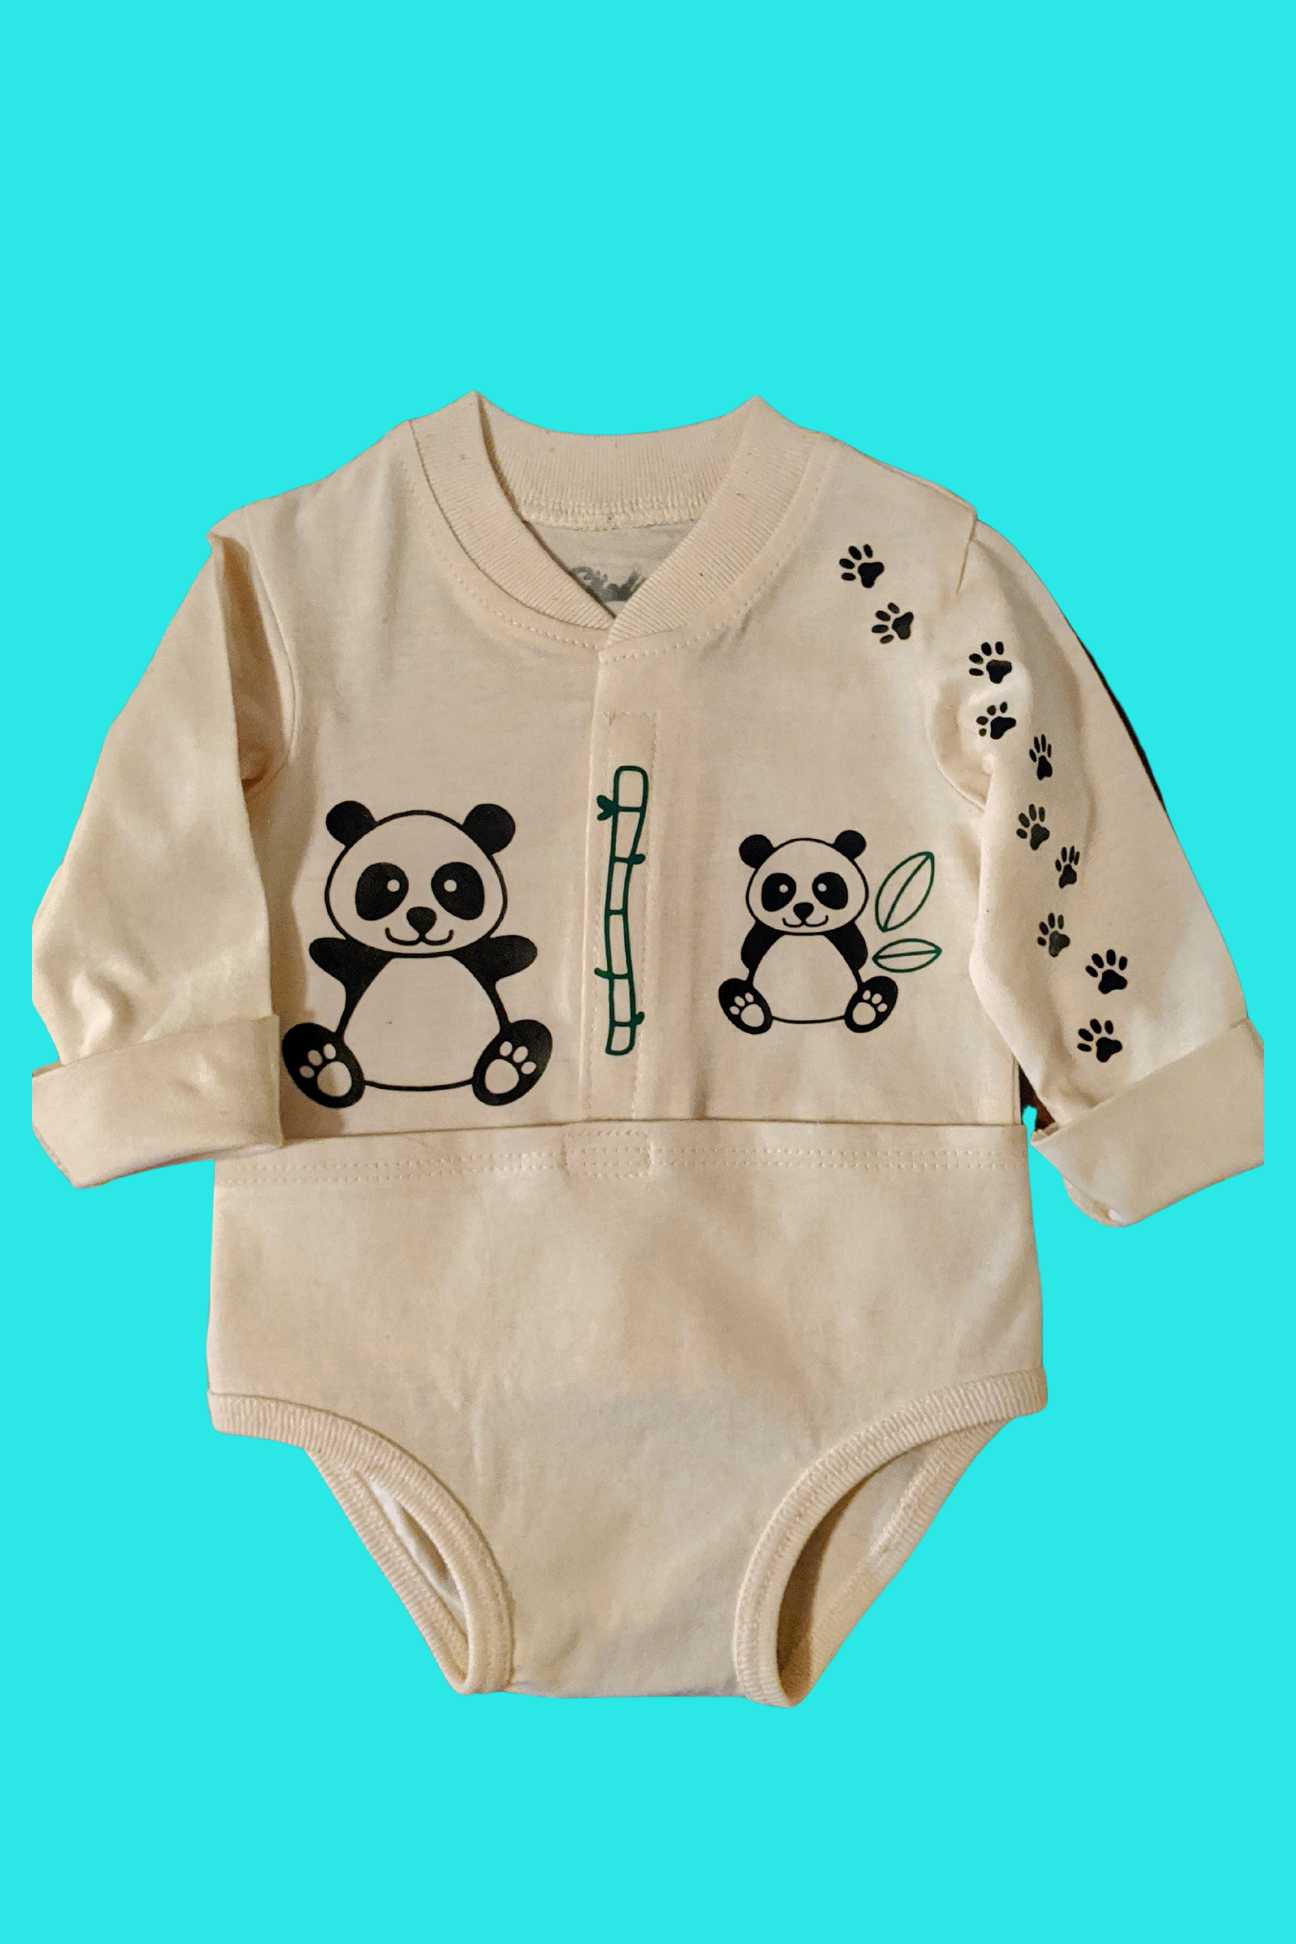 Pandamonium Baby Bodysuit